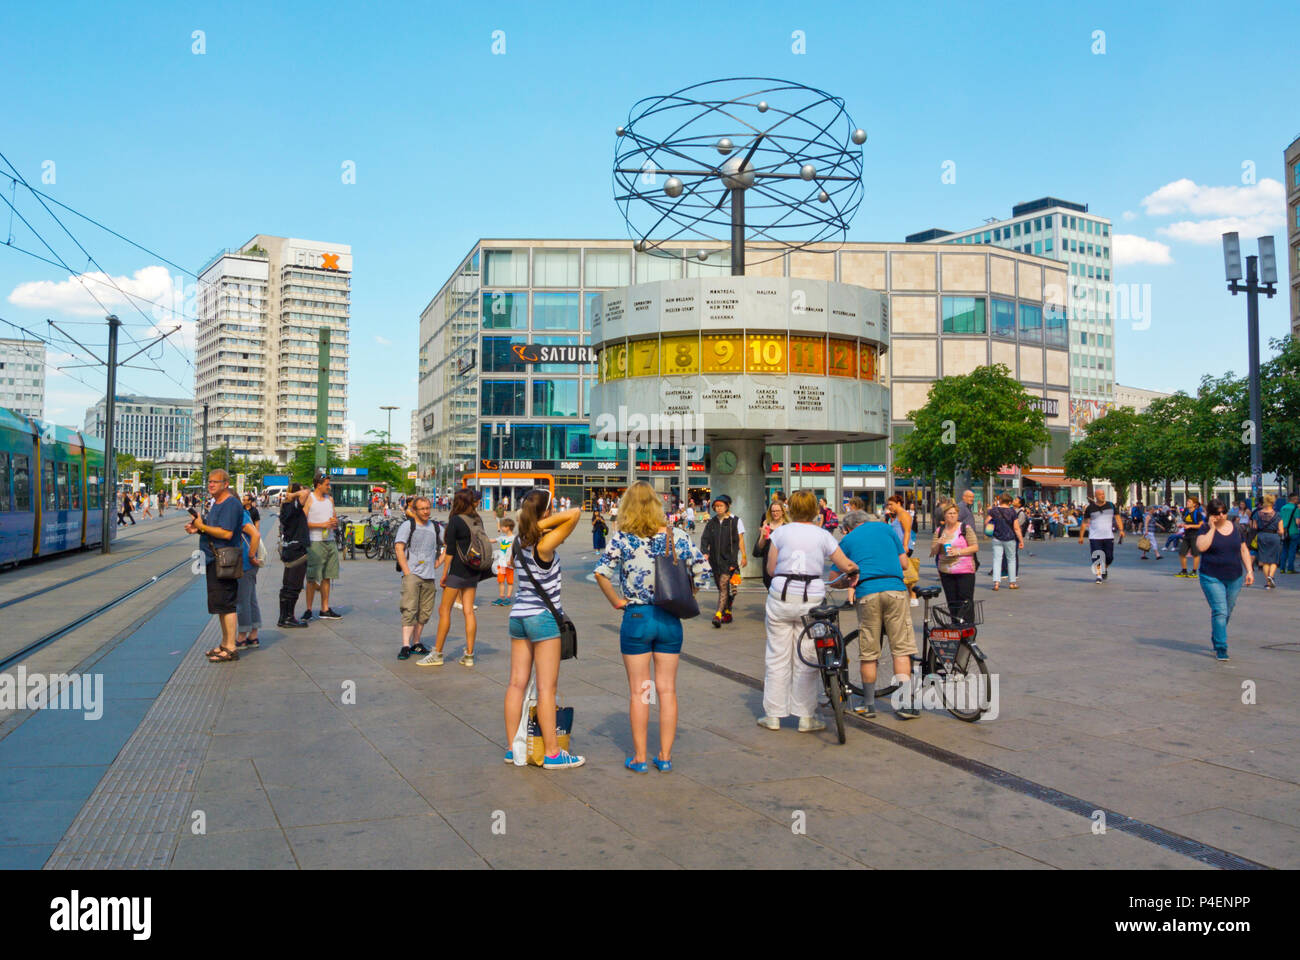 Weltzeituhr, horloge mondiale, Alexanderplatz, Berlin, Allemagne Banque D'Images